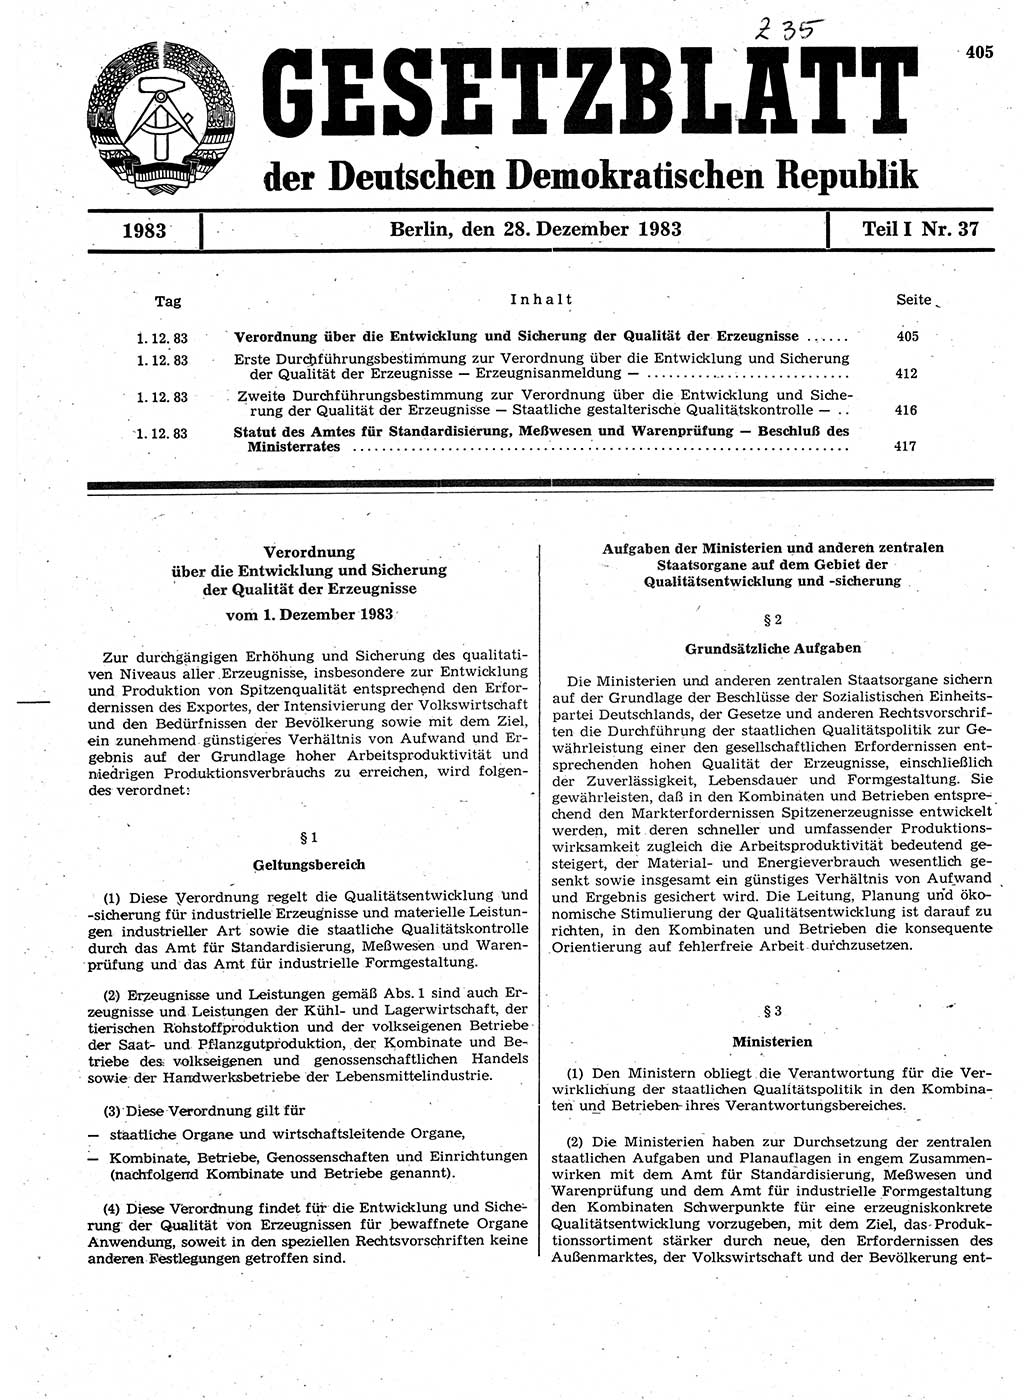 Gesetzblatt (GBl.) der Deutschen Demokratischen Republik (DDR) Teil Ⅰ 1983, Seite 405 (GBl. DDR Ⅰ 1983, S. 405)